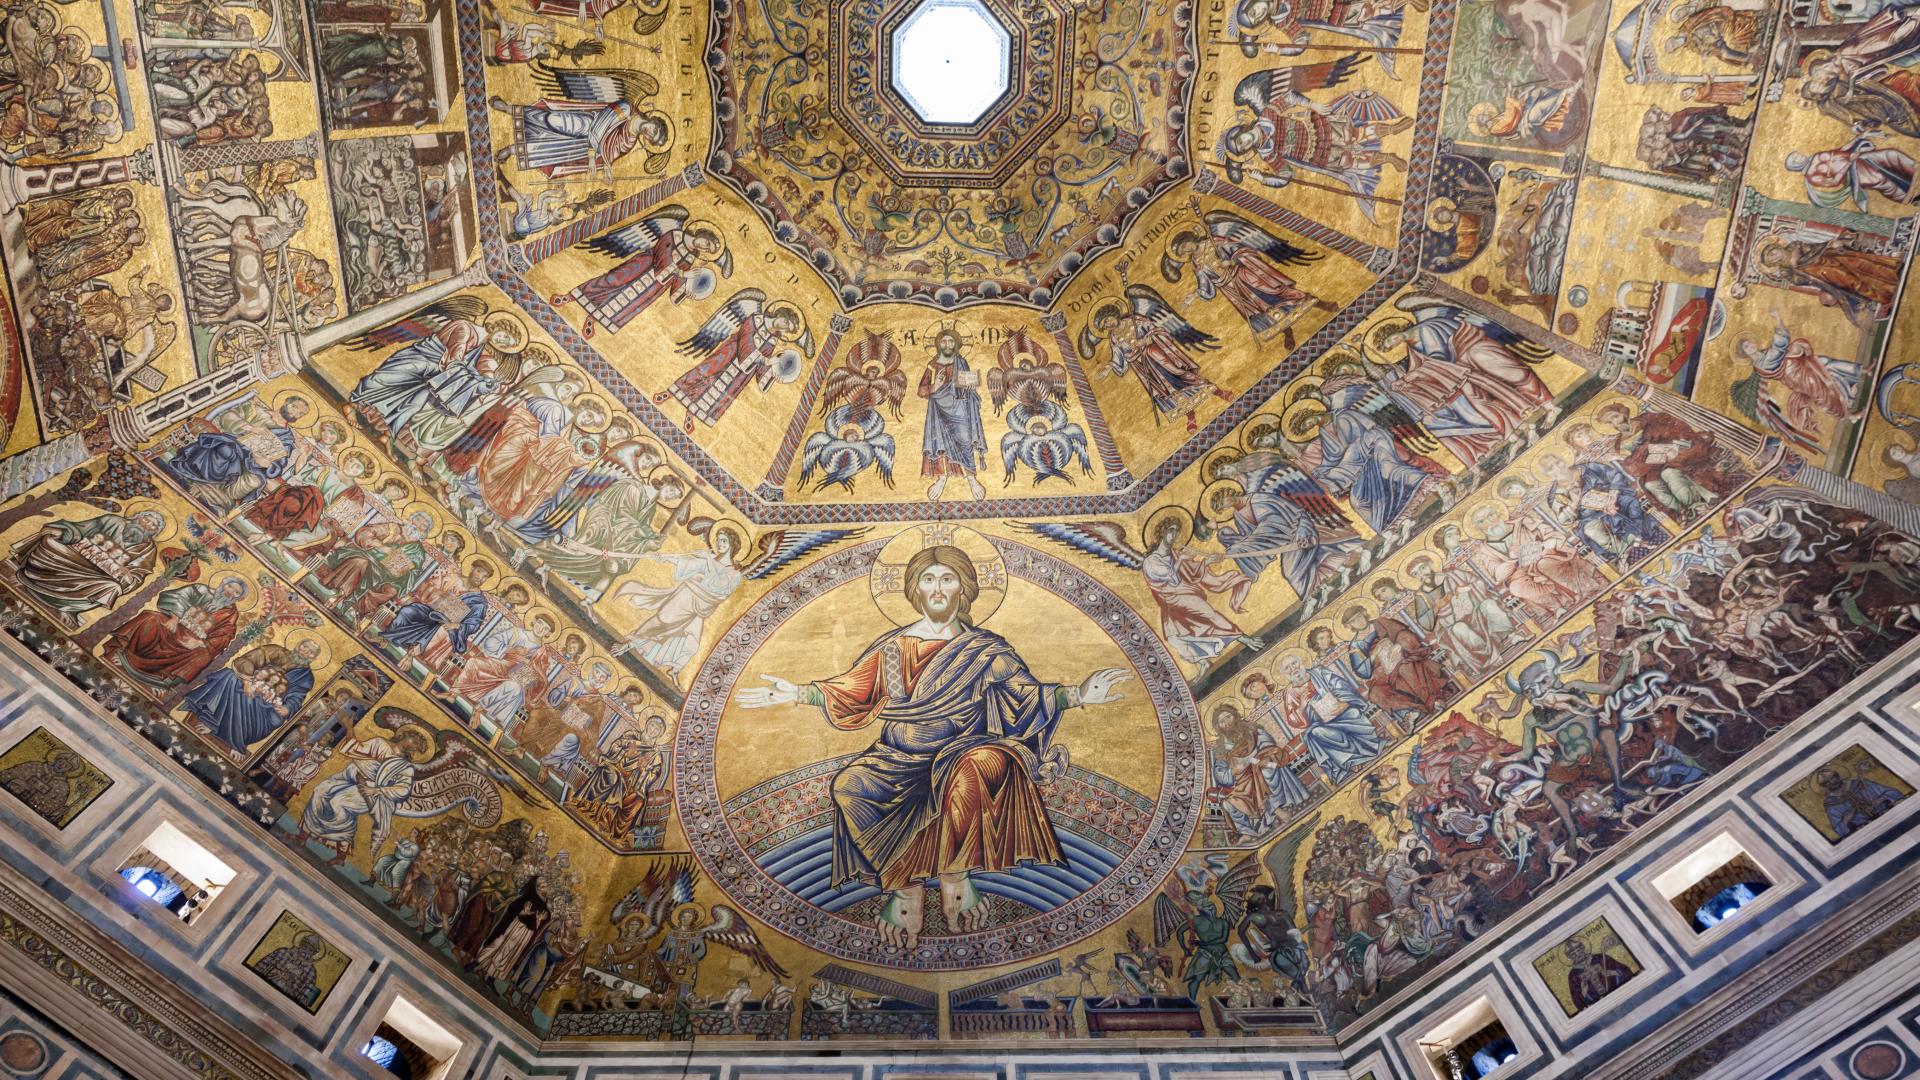 The Last Judgment - Giotto di Bondone